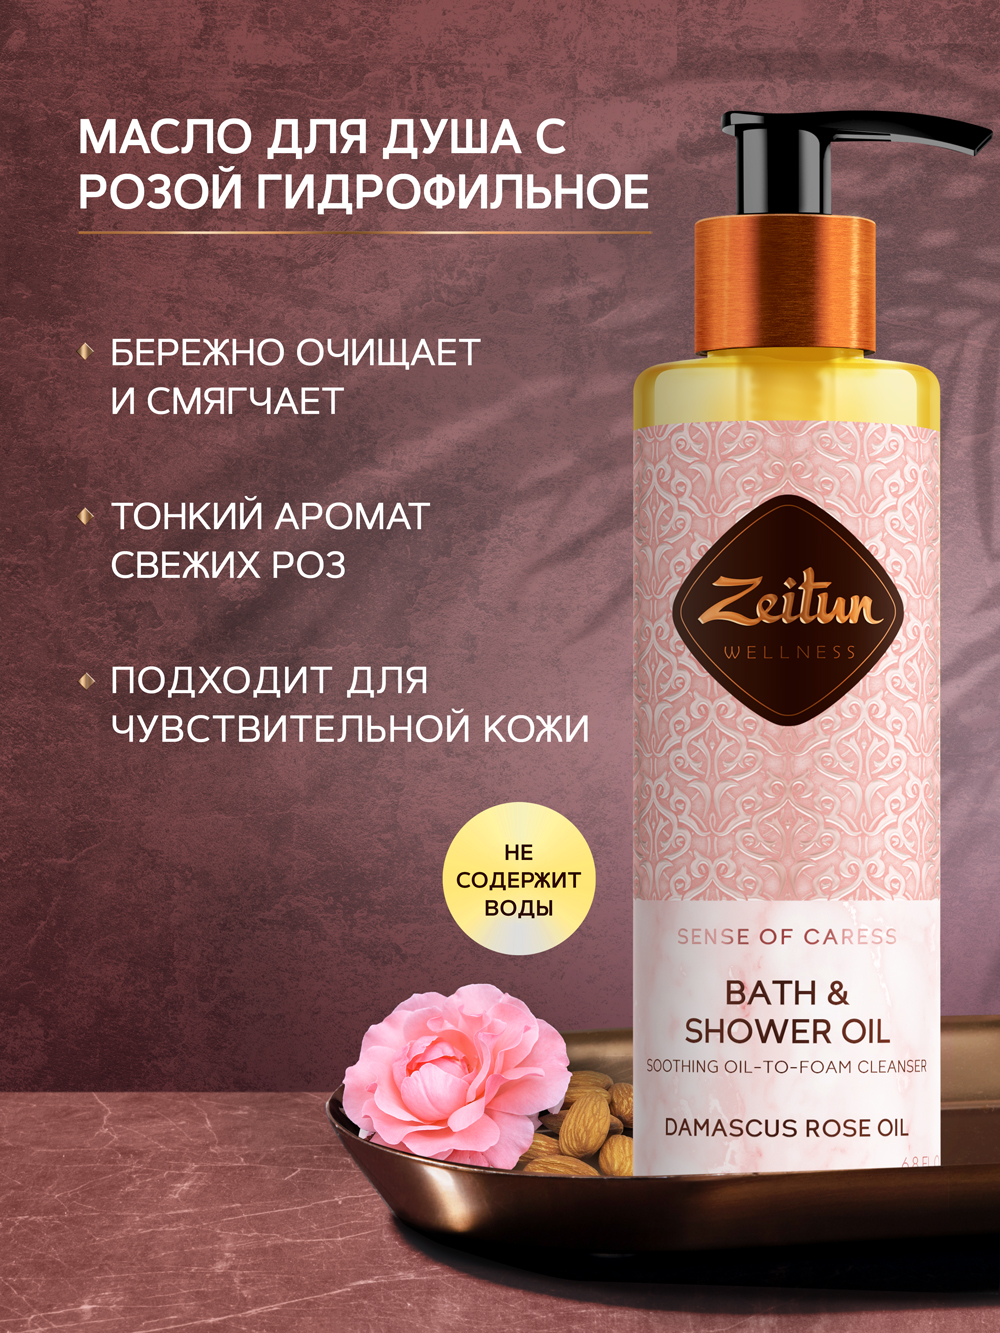 Масло для душа Zeitun Ritual of Caress Bath & Shower Oil смягчающее, 200 мл zeitun соль для ванн очная с лепестками дамасской розы и гибискусом sense of caress